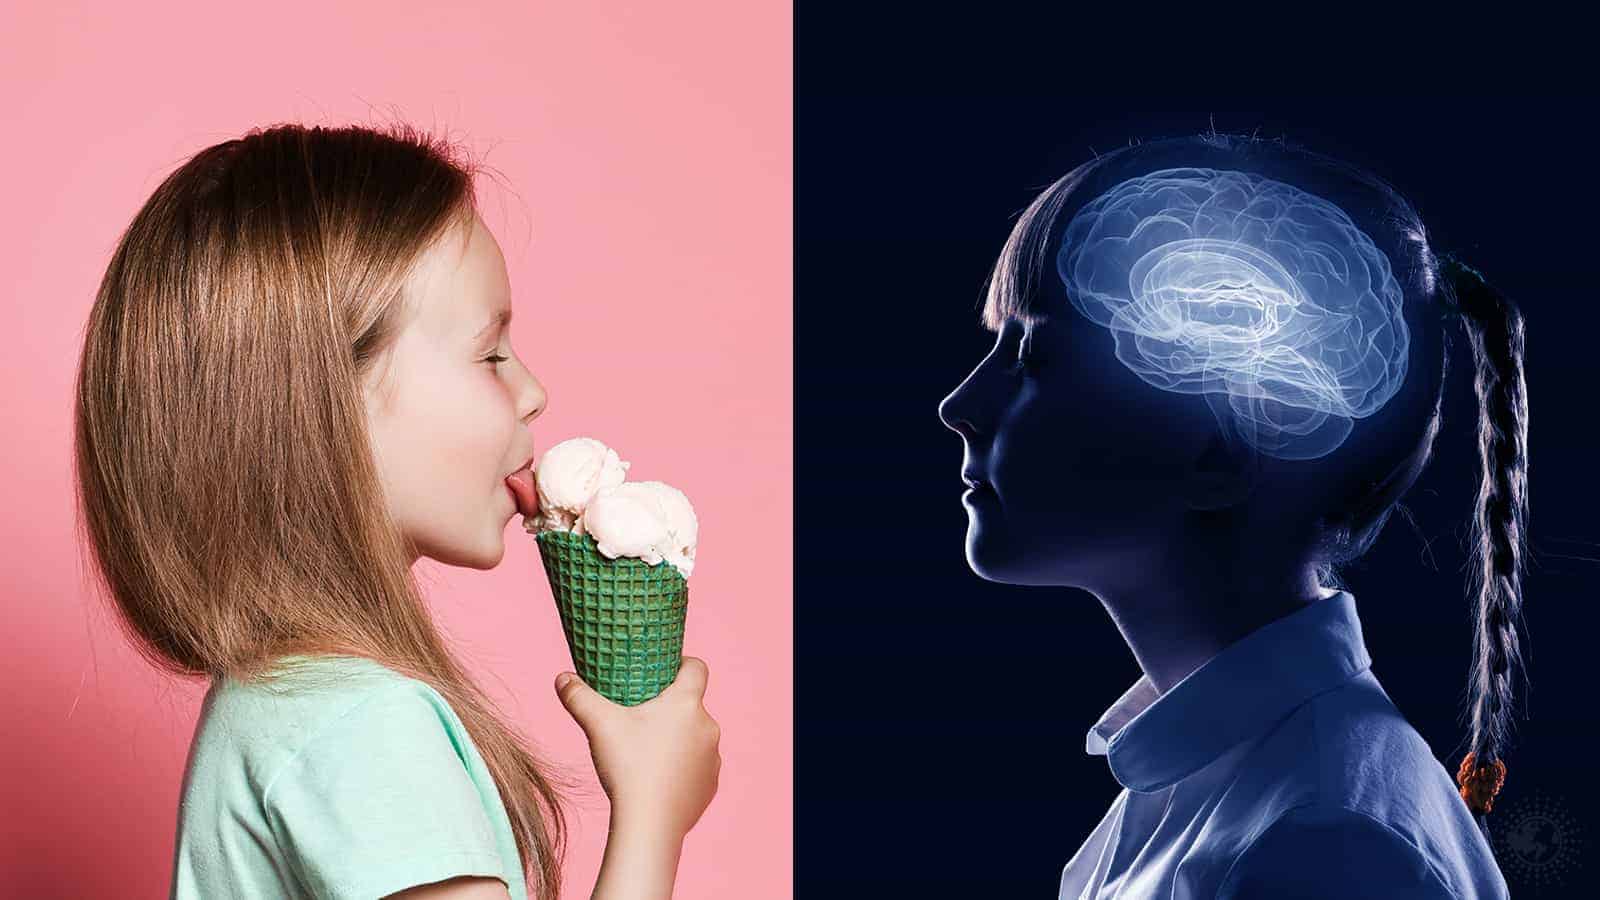 Researchers Reveal Sugar Impairs Brain Development